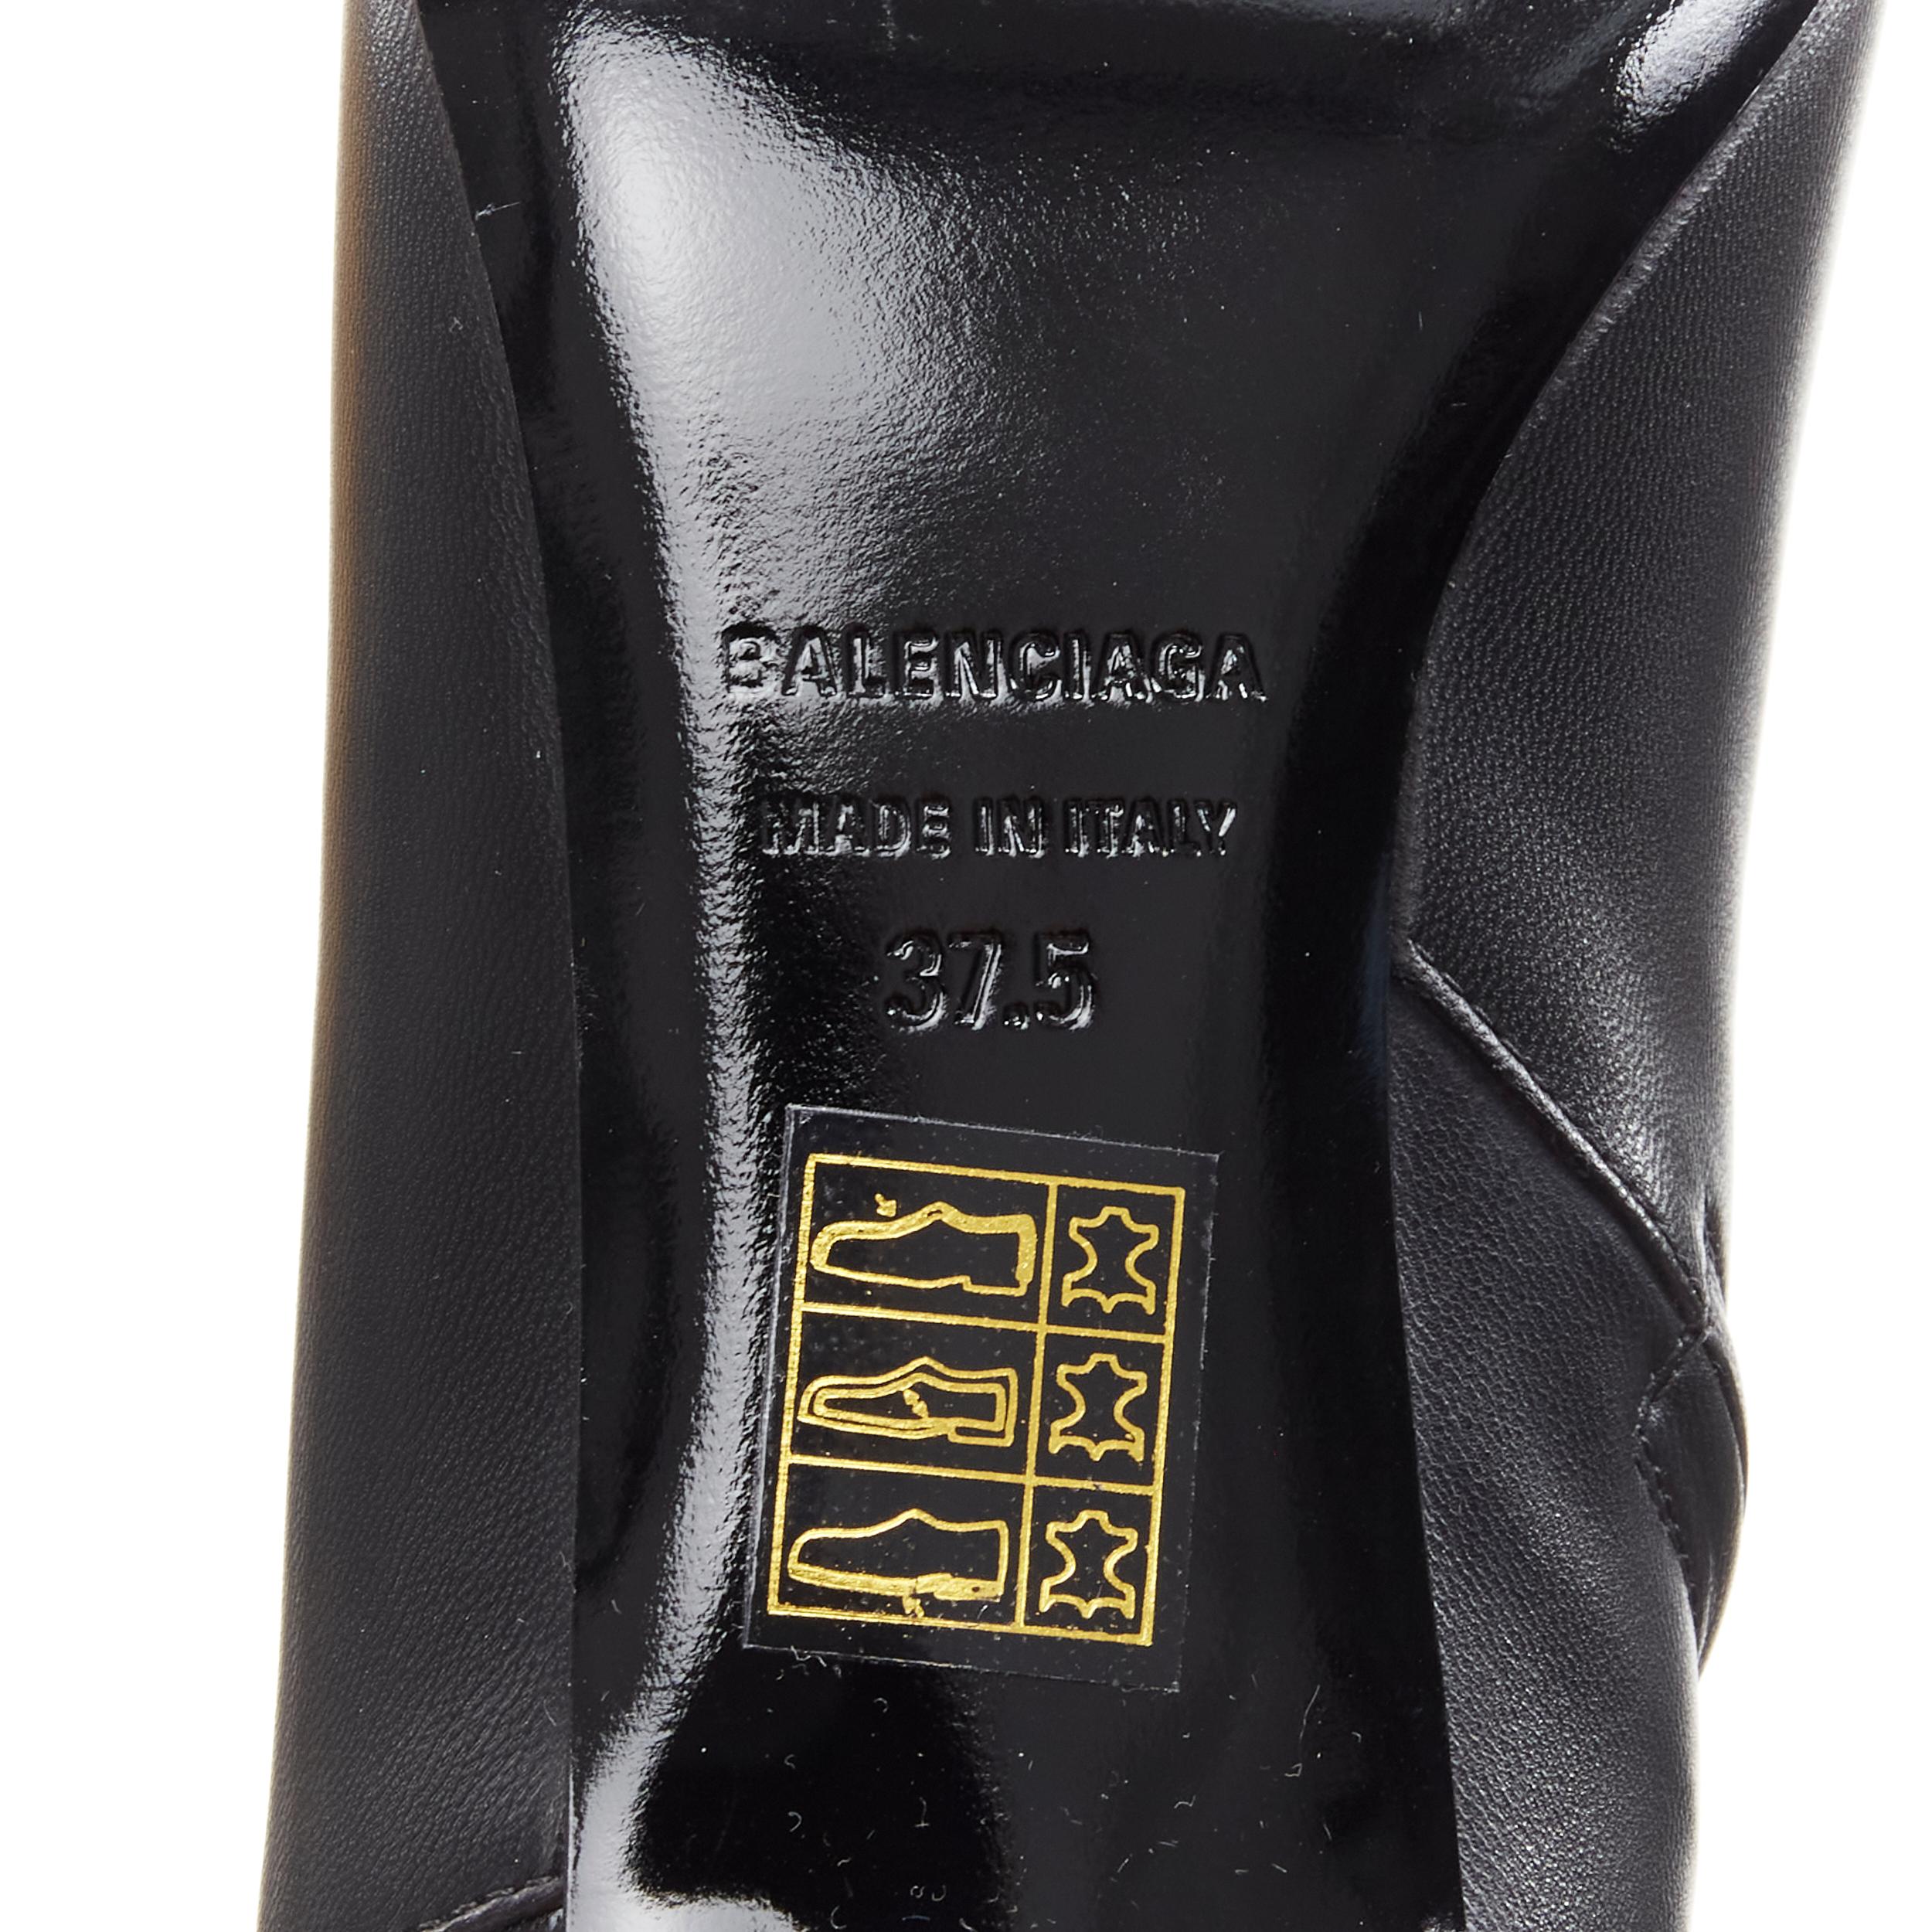 new BALENCIAGA Knife black calfskin leather kitten heel bootie EU37.5 US7.5 4